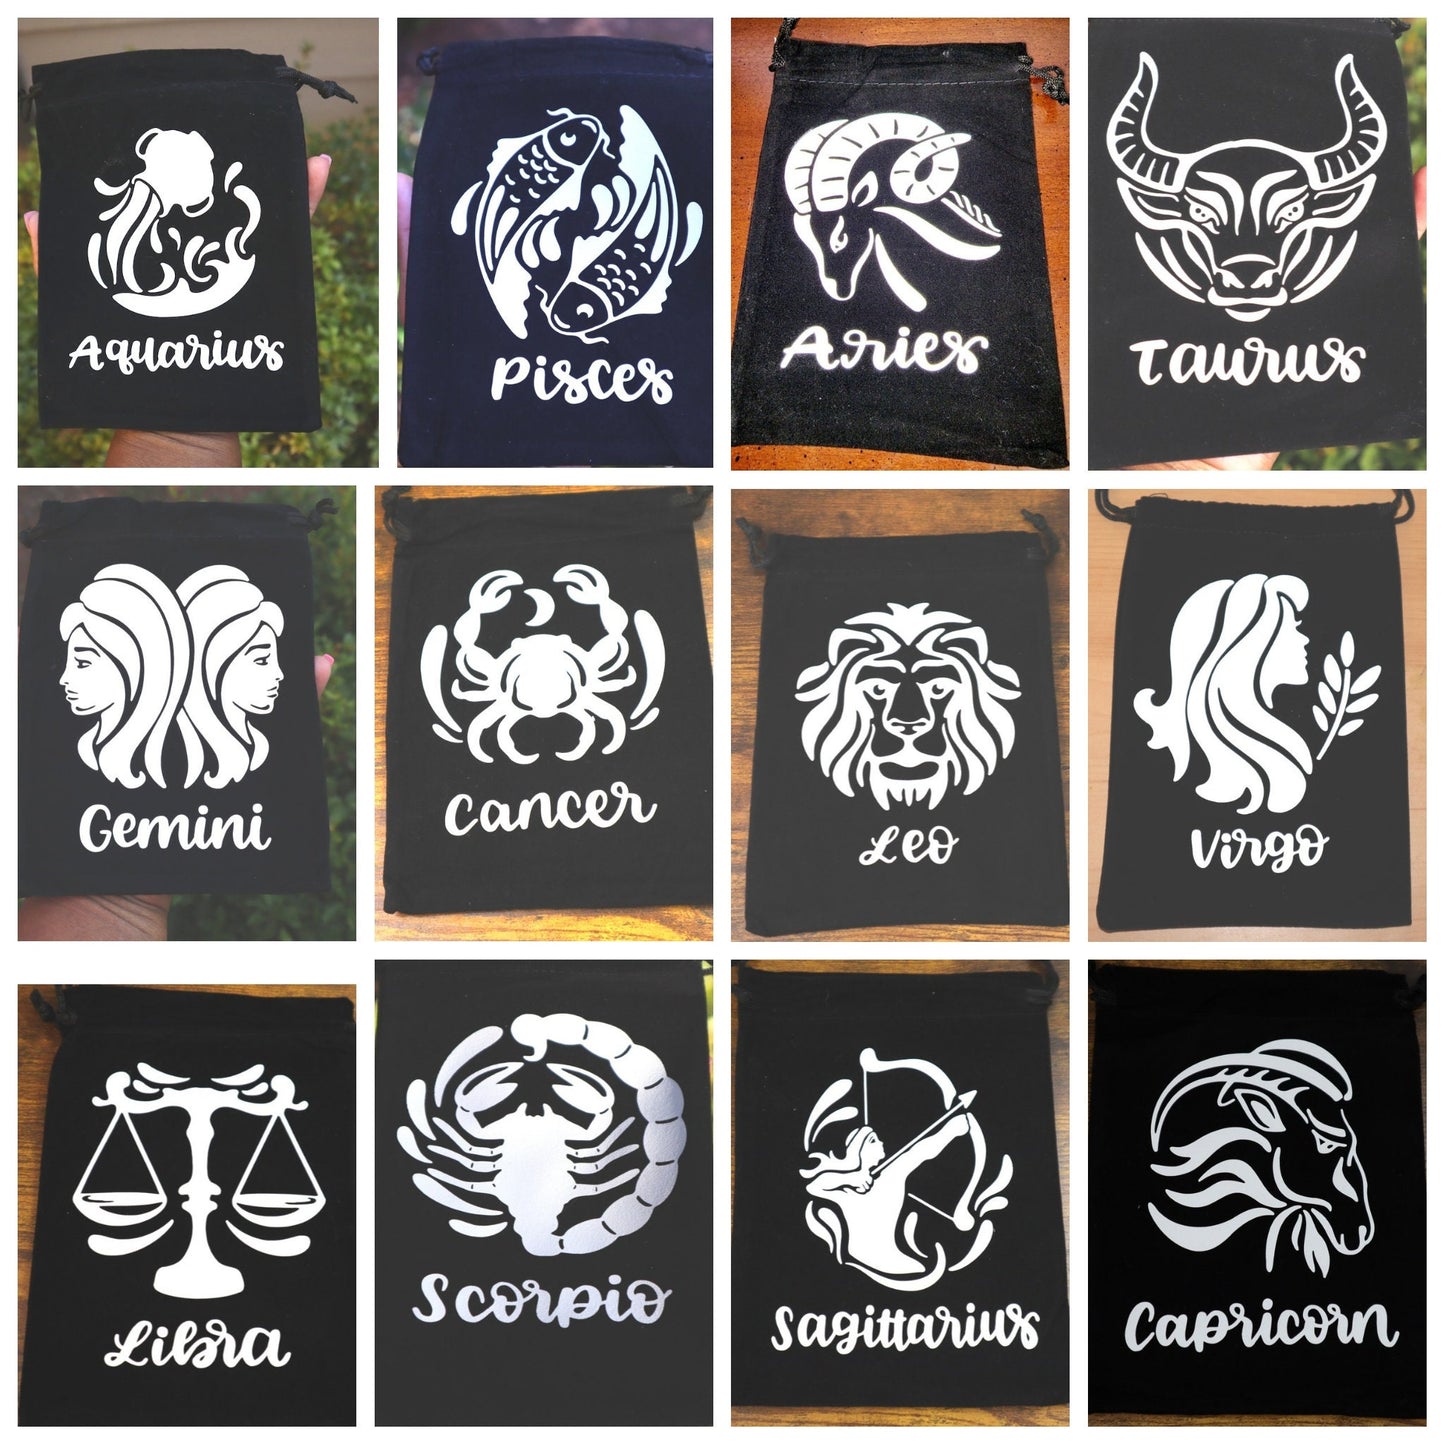 Zodiac Crystals, Astrological Crystals, Aquarius, Pisces, Aries, Taurus, Gemini, Cancer, Leo, Virgo, Libra, Scorpio, Sagittarius, Capricorn